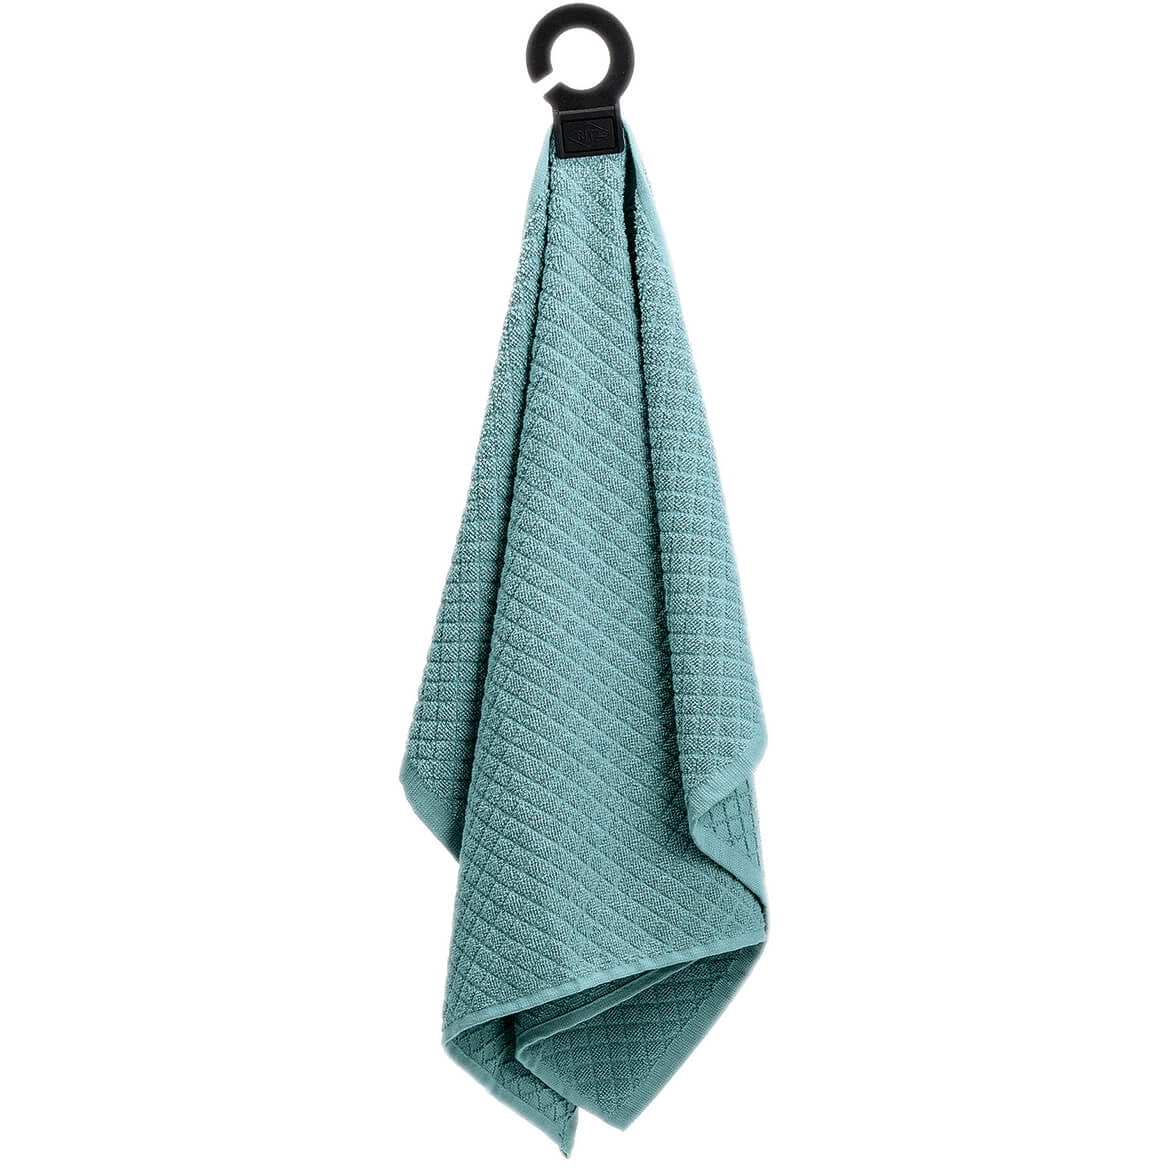 Hang and Hook  Towel  Walmart com Walmart com